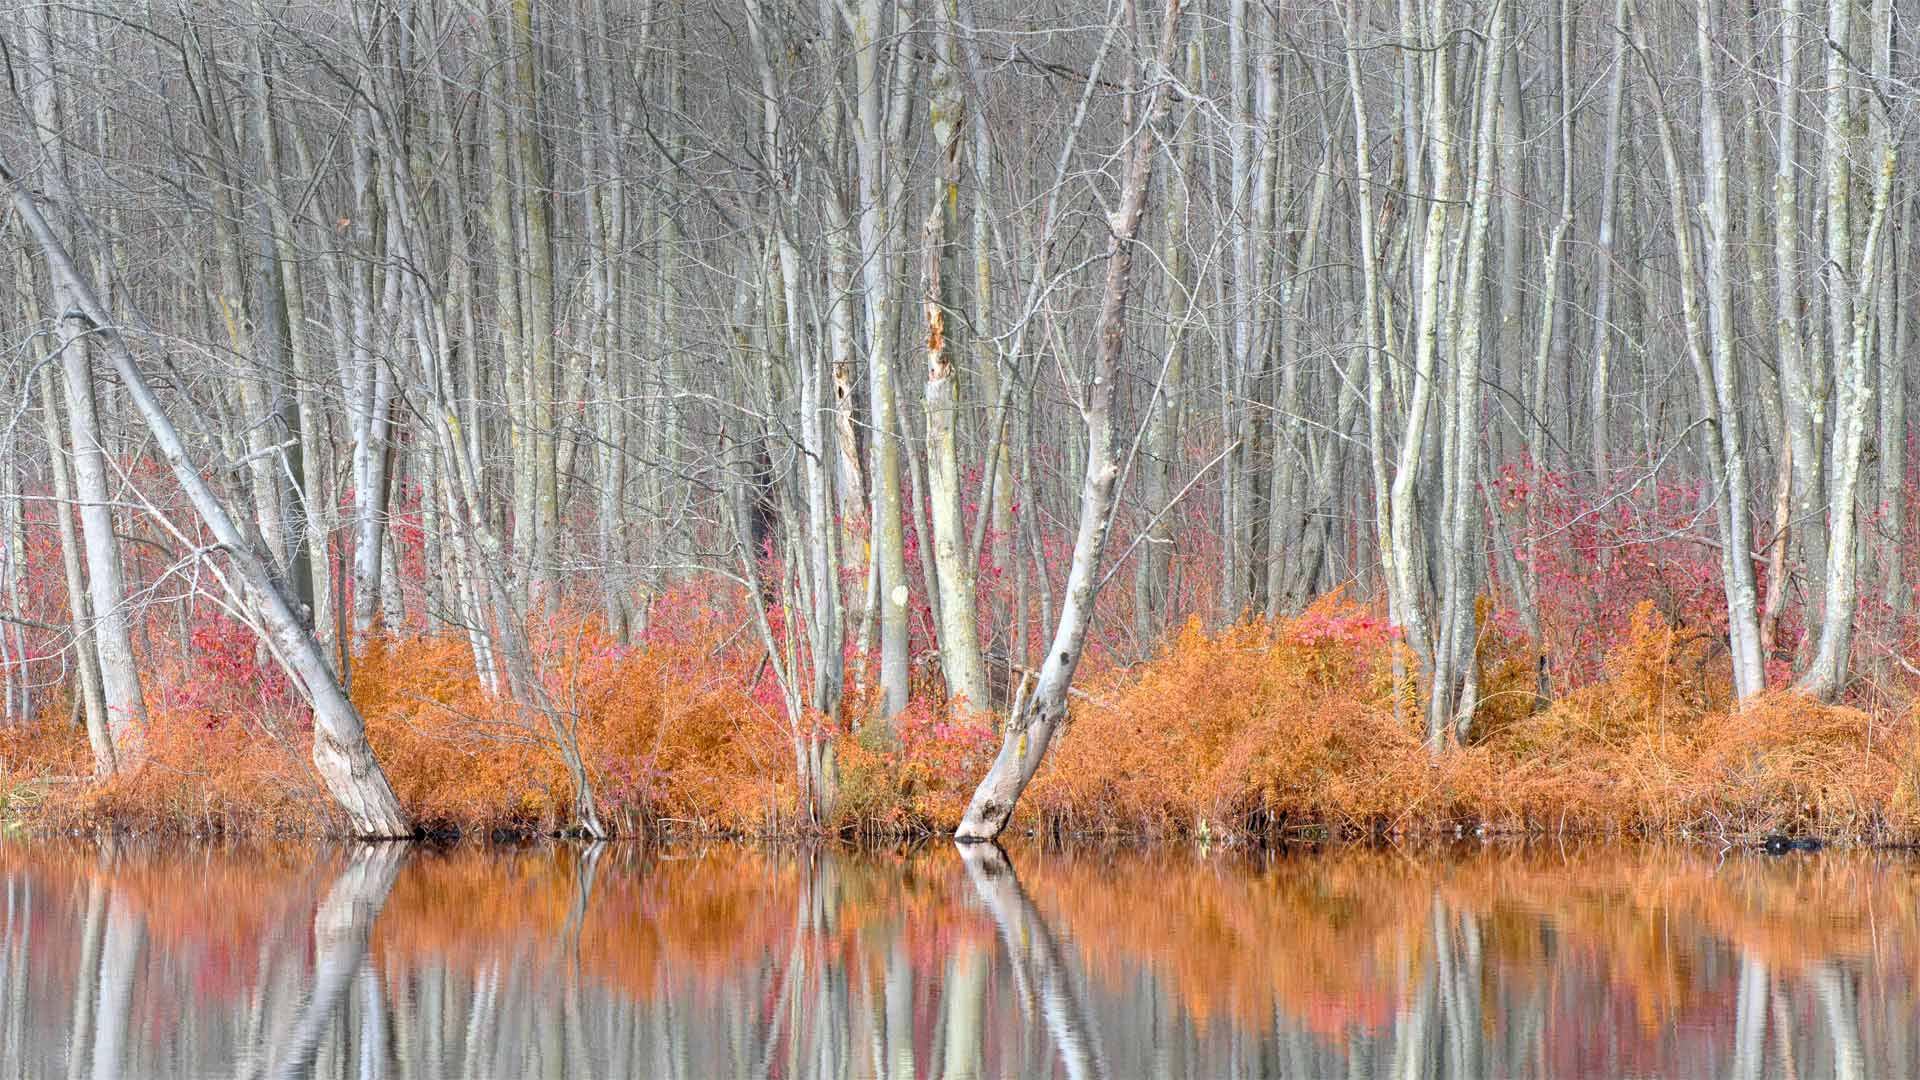 比弗湖自然中心内光秃秃的树和红盖鳞毛蕨比弗湖-www.todaybing.com 必应壁纸 必应美图